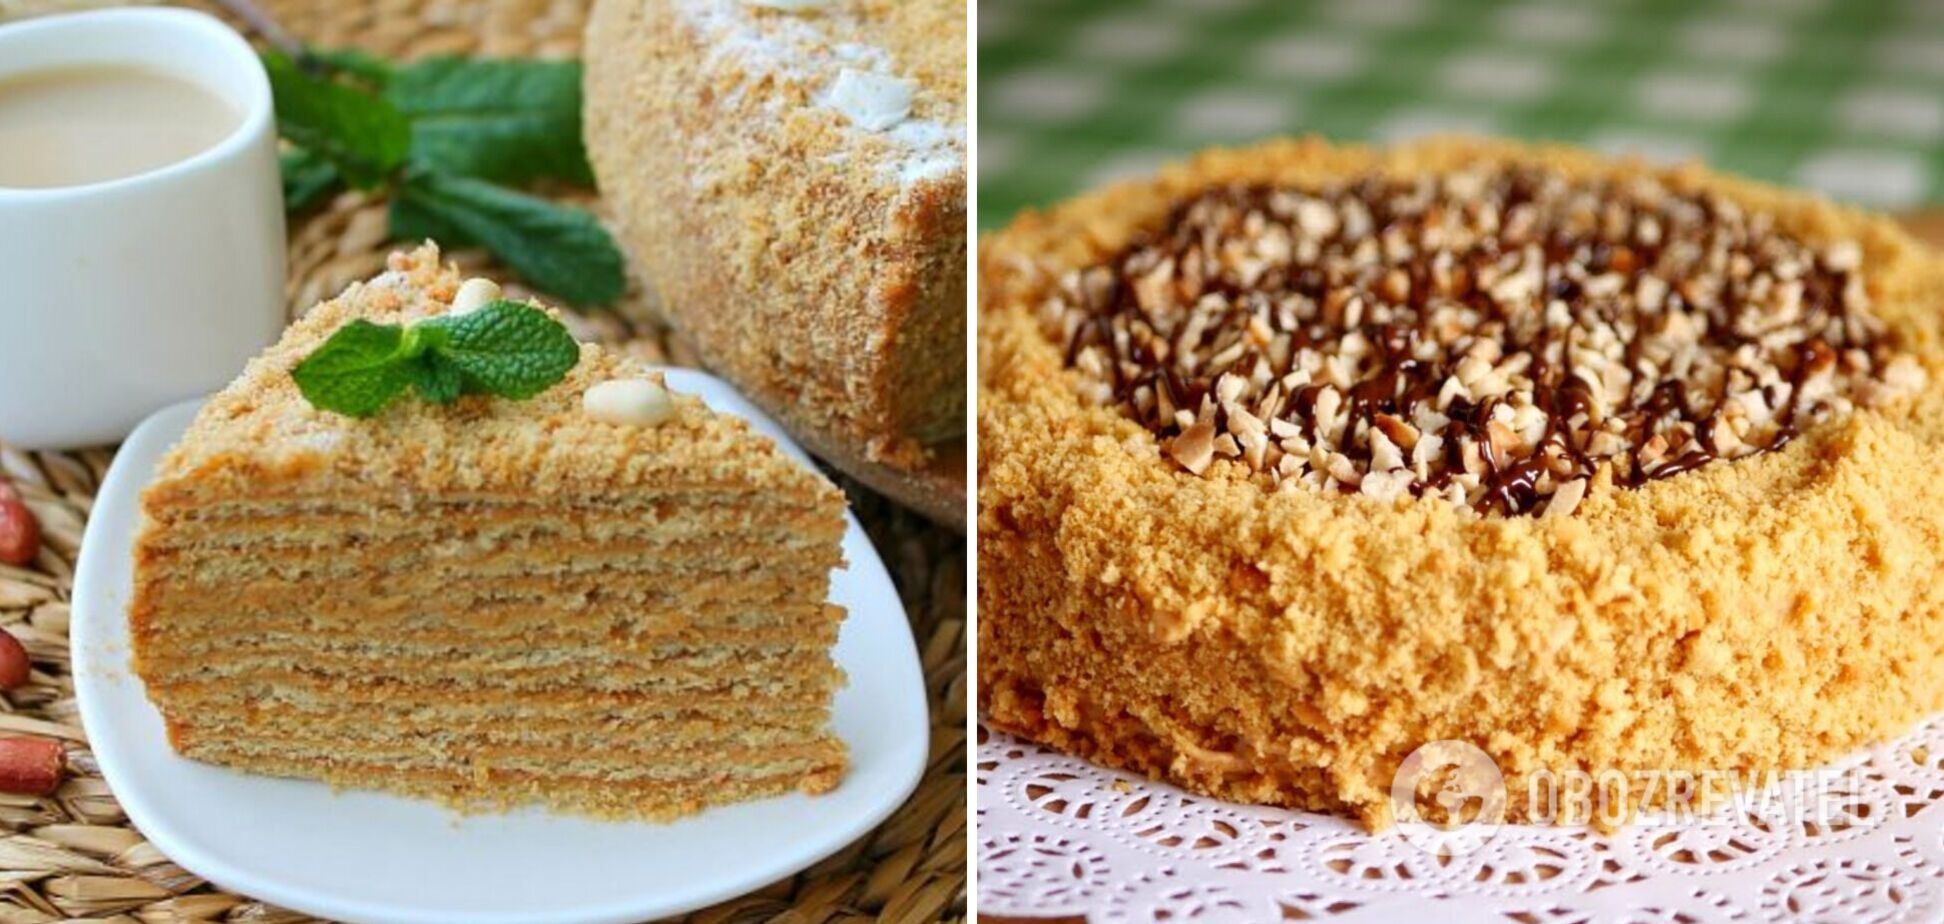 Як приготувати торт 'Корівка' в домашніх умовах: смак родом із дитинства